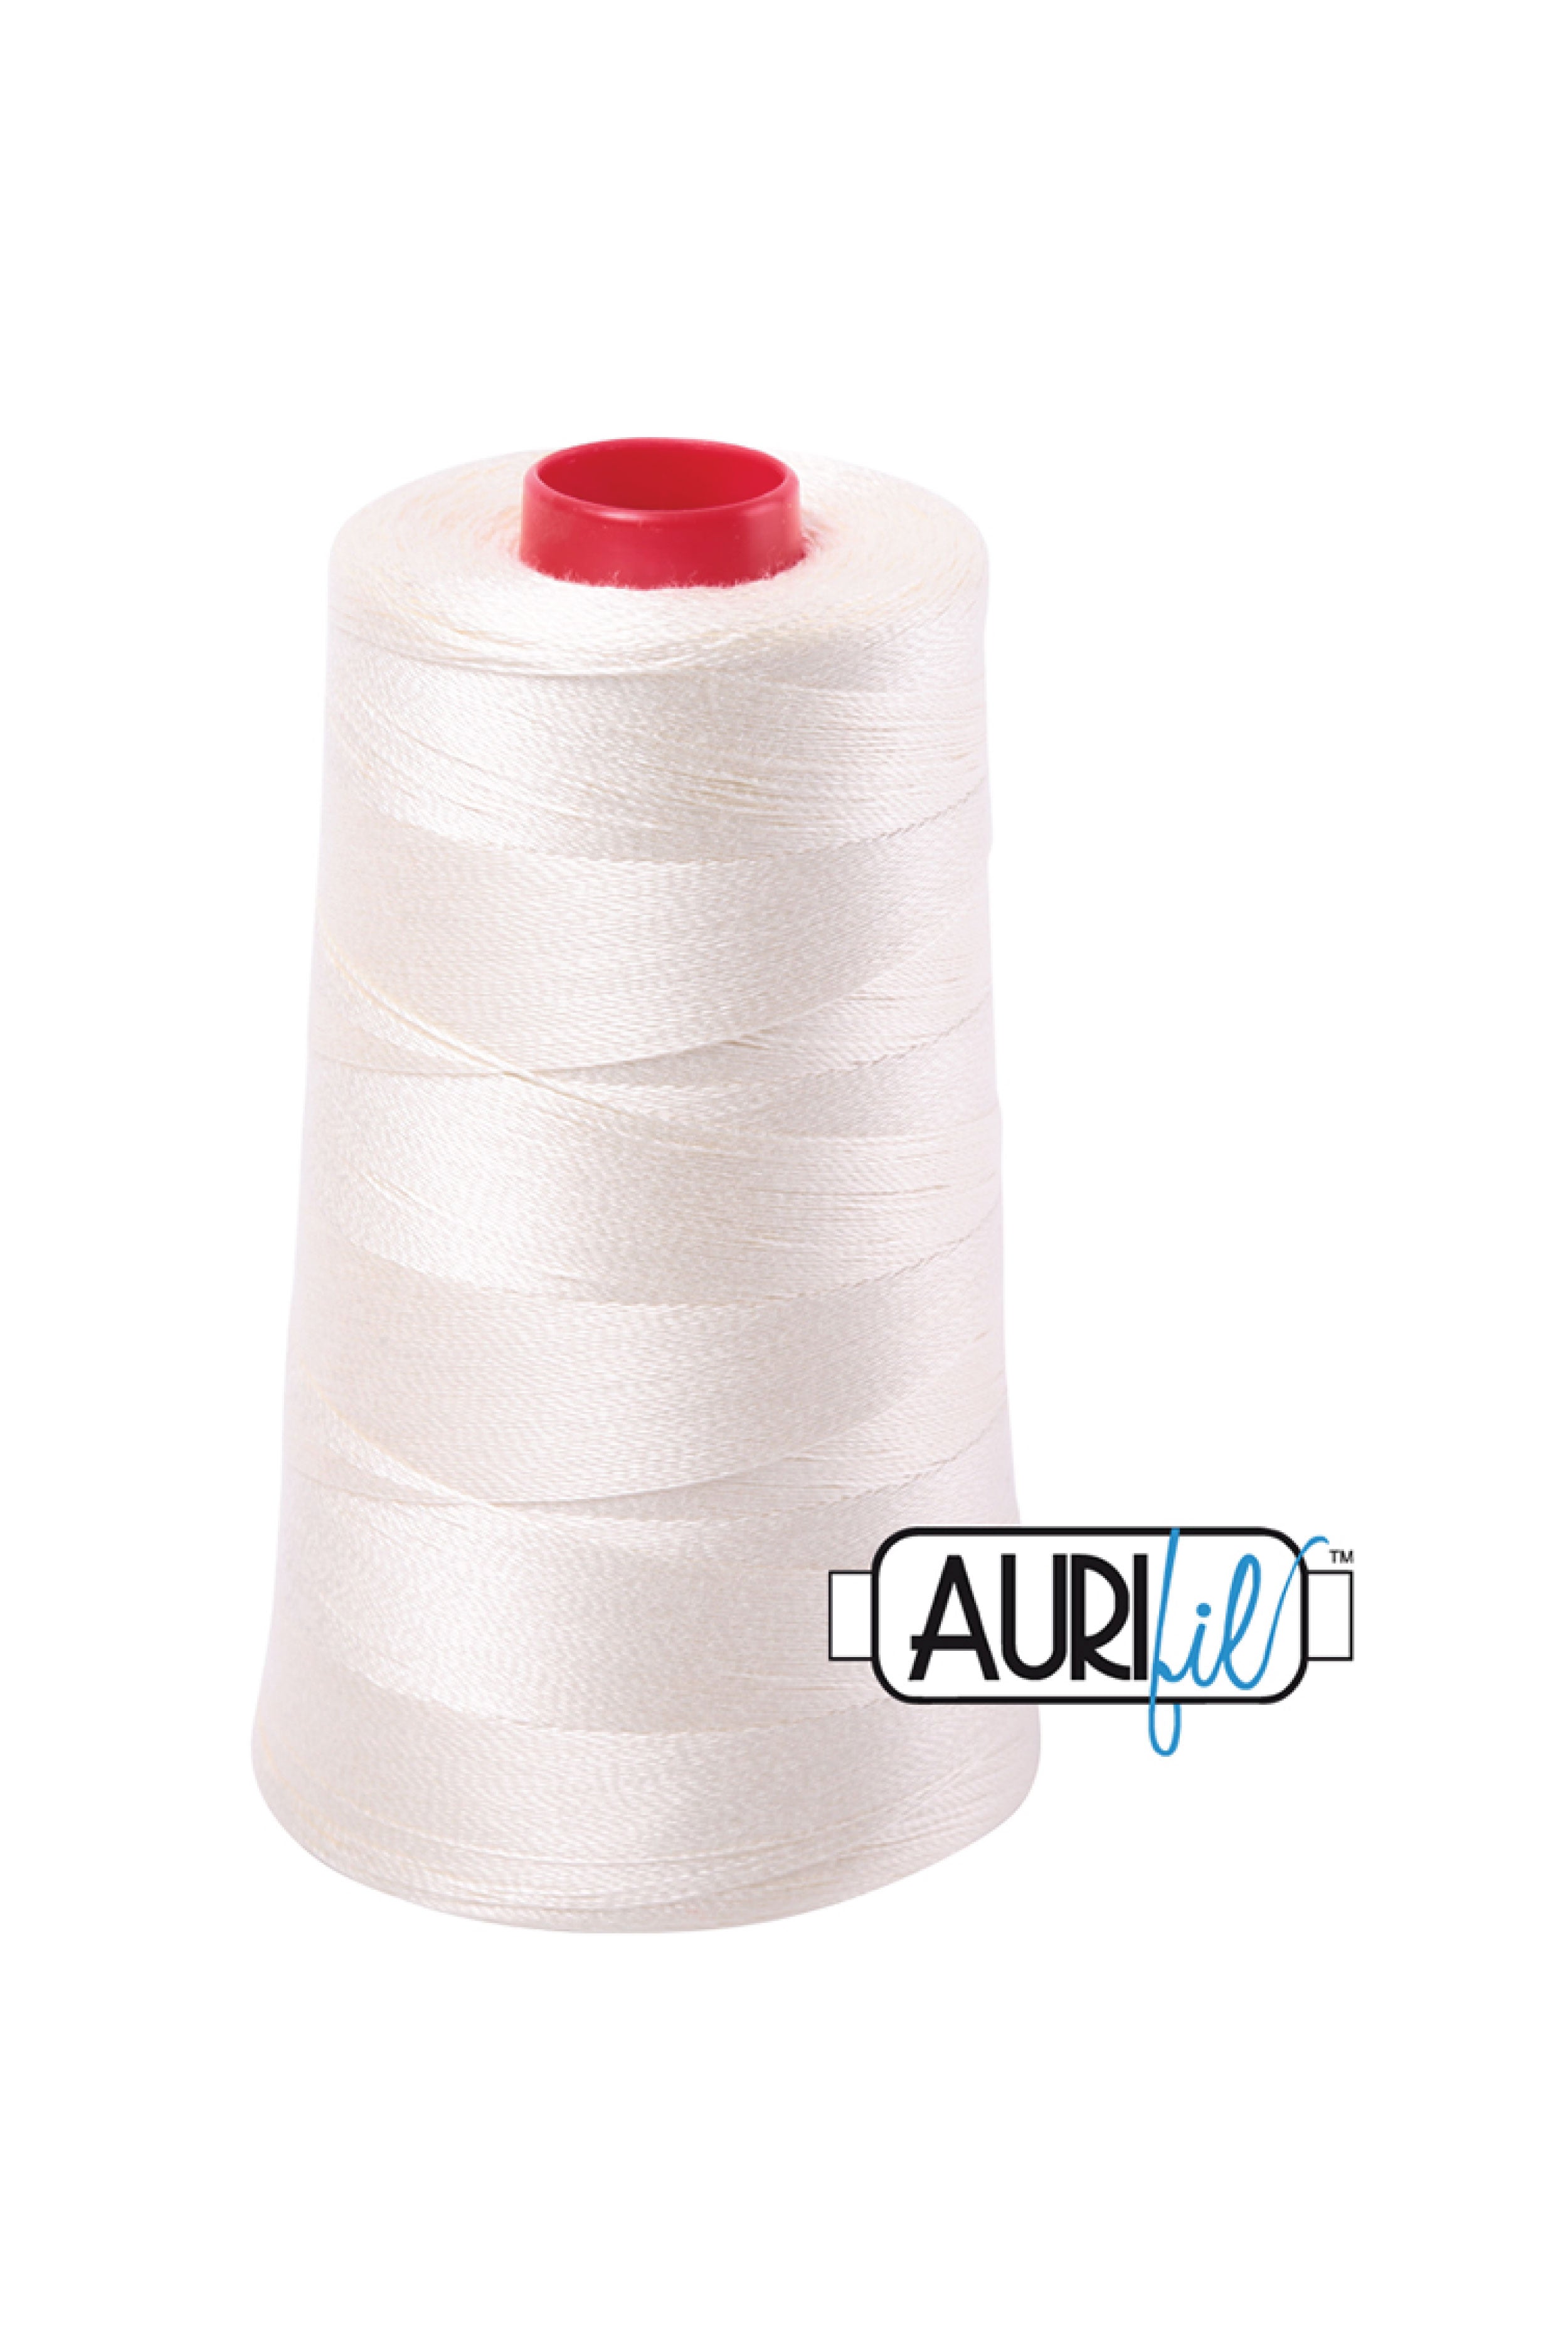 Aurifil Thread - Cone